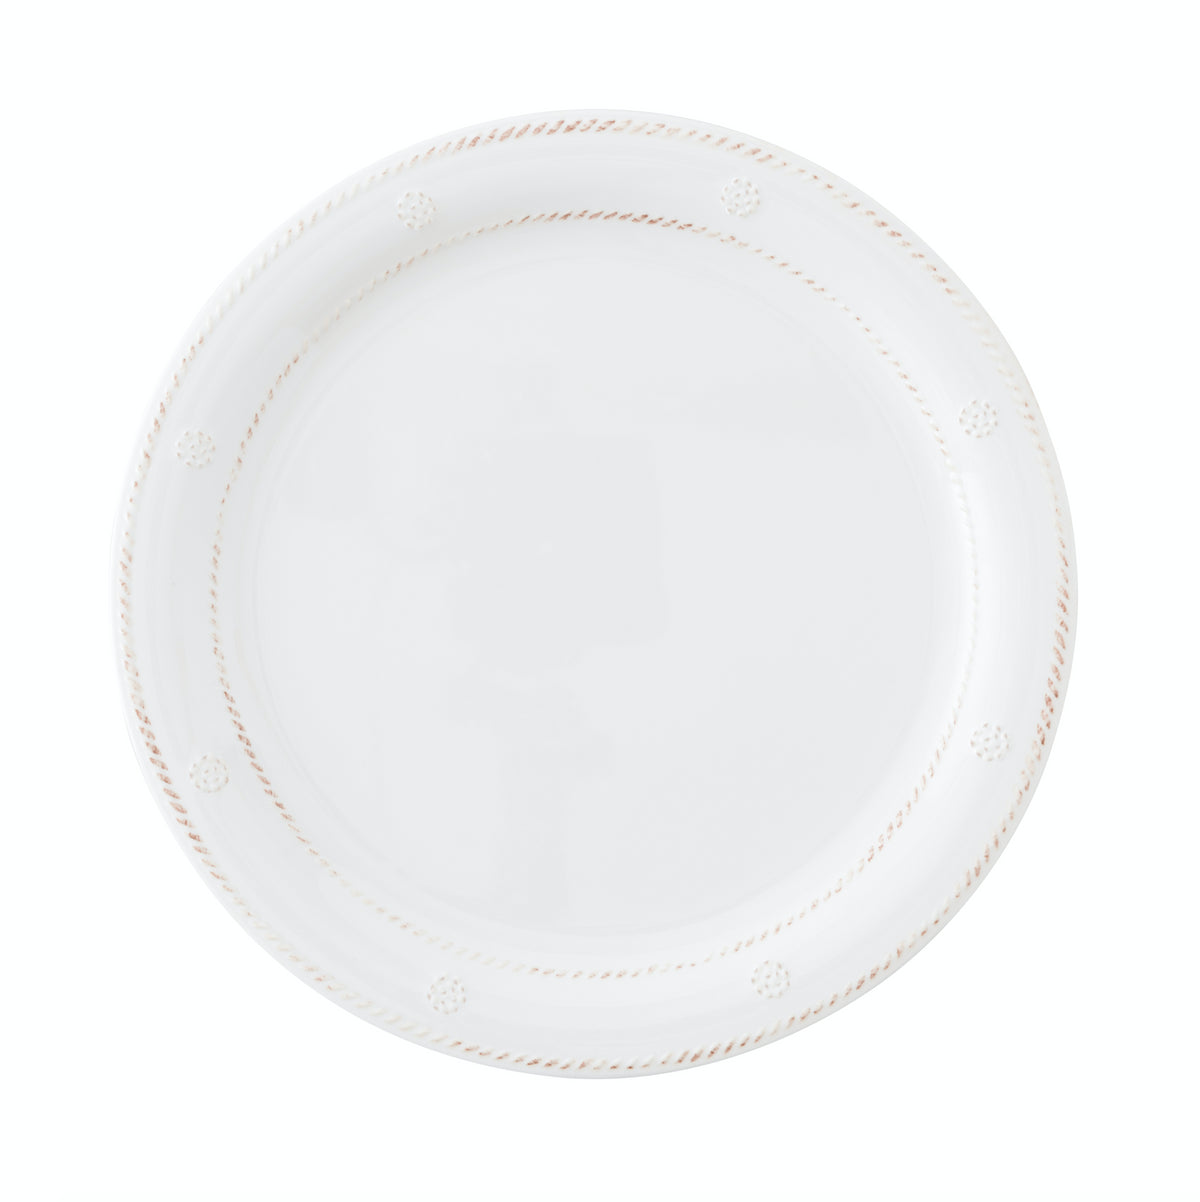 Berry & Thread Whitewash Melamine Dinner Plate